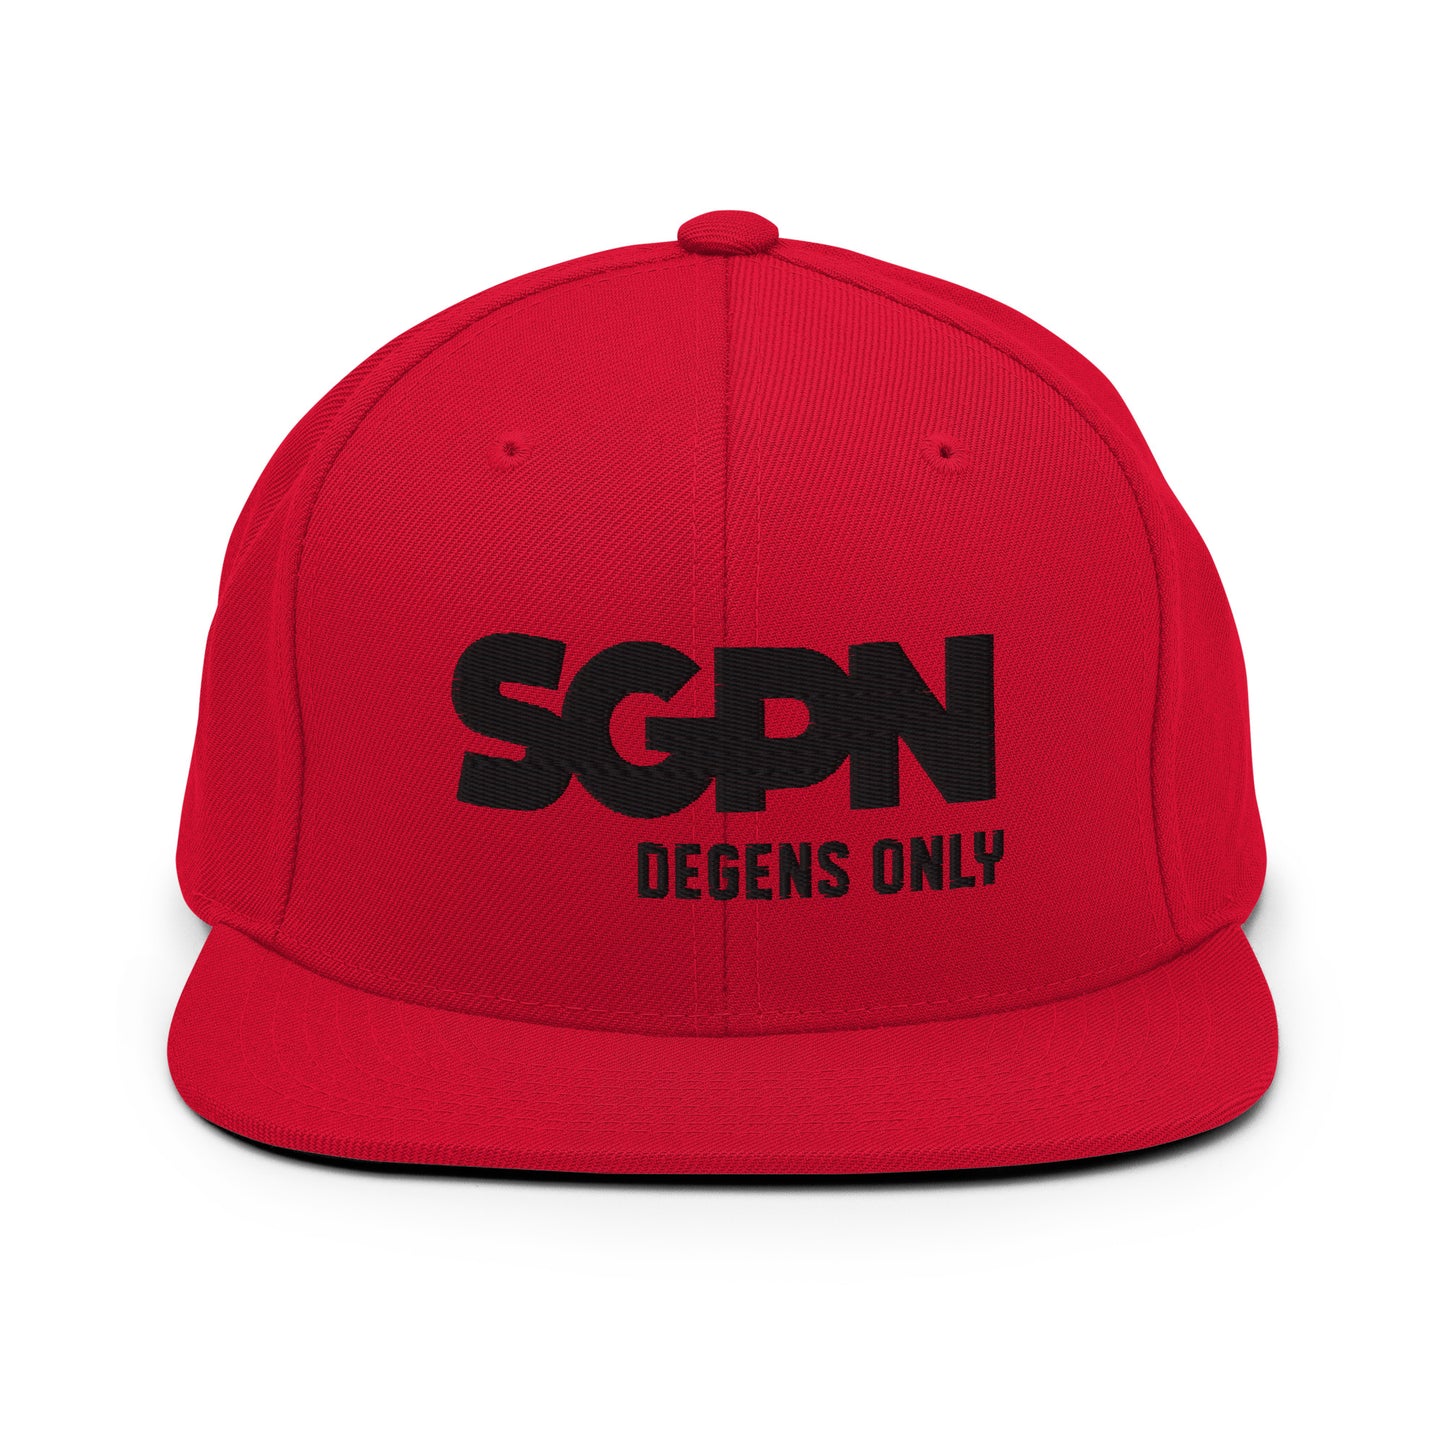 SGPN - Degens Only edition - Snapback Hat (Black Logo)